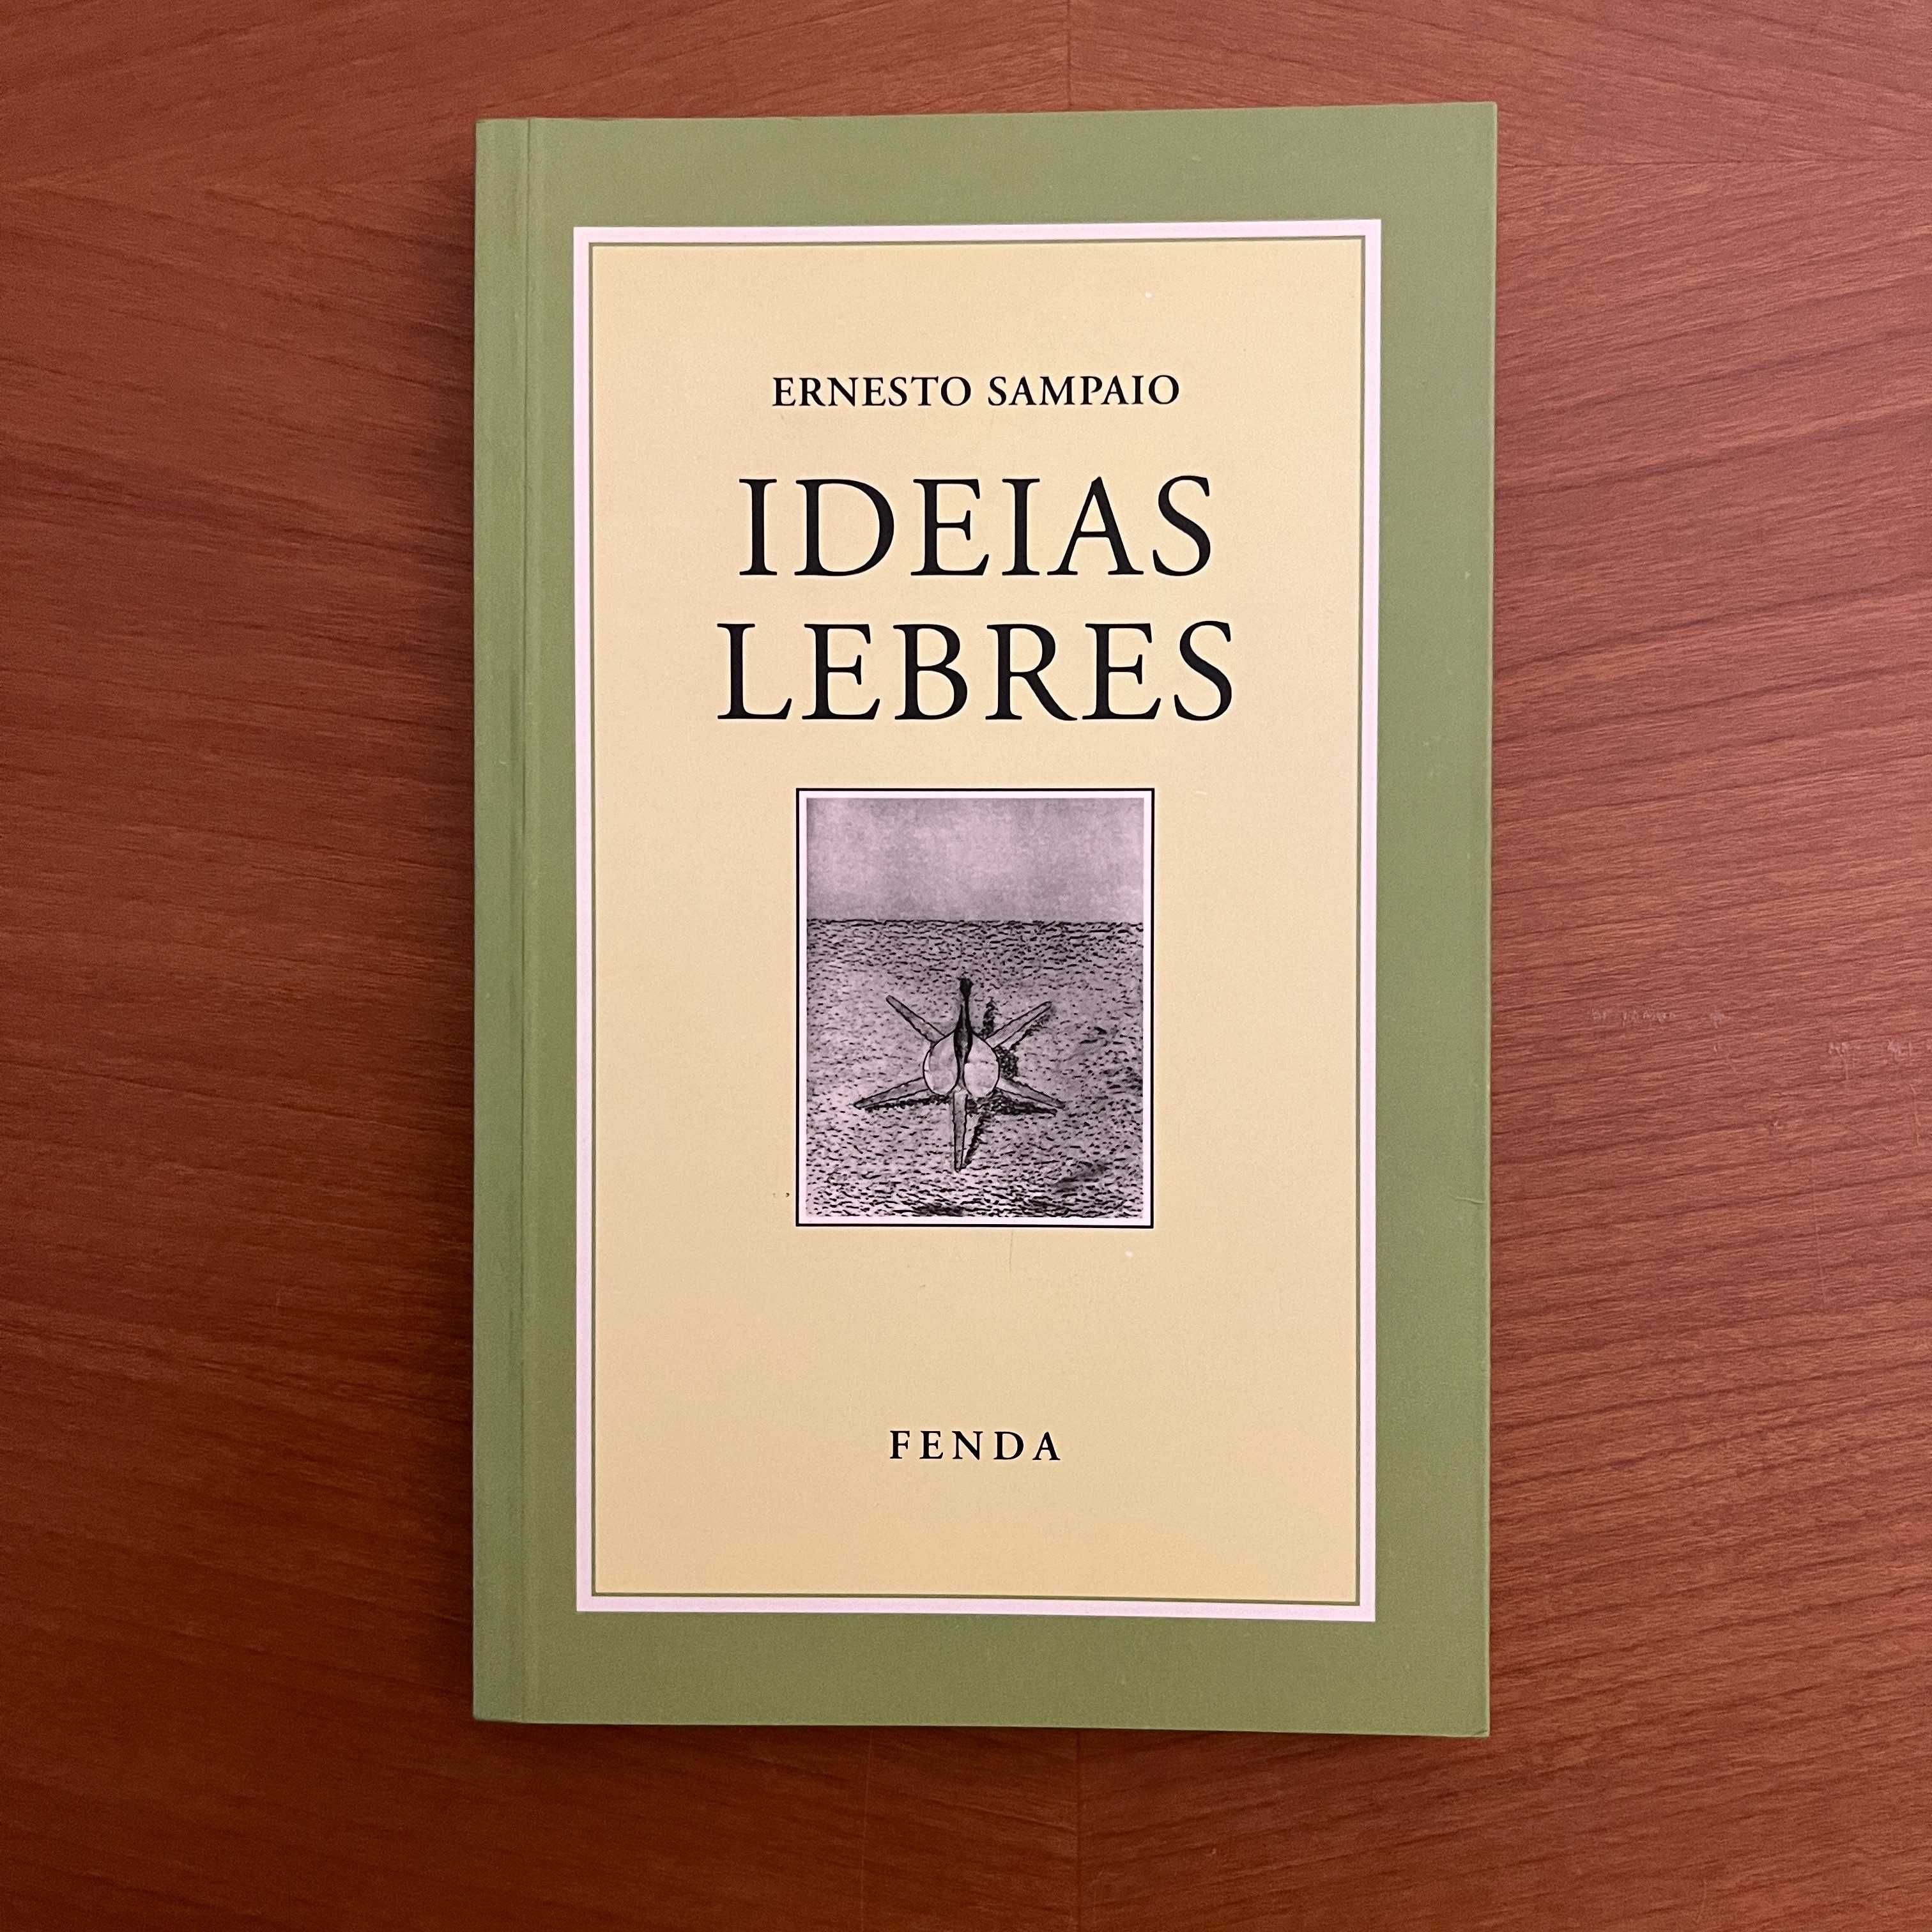 Ernesto Sampaio - Ideias Lebres